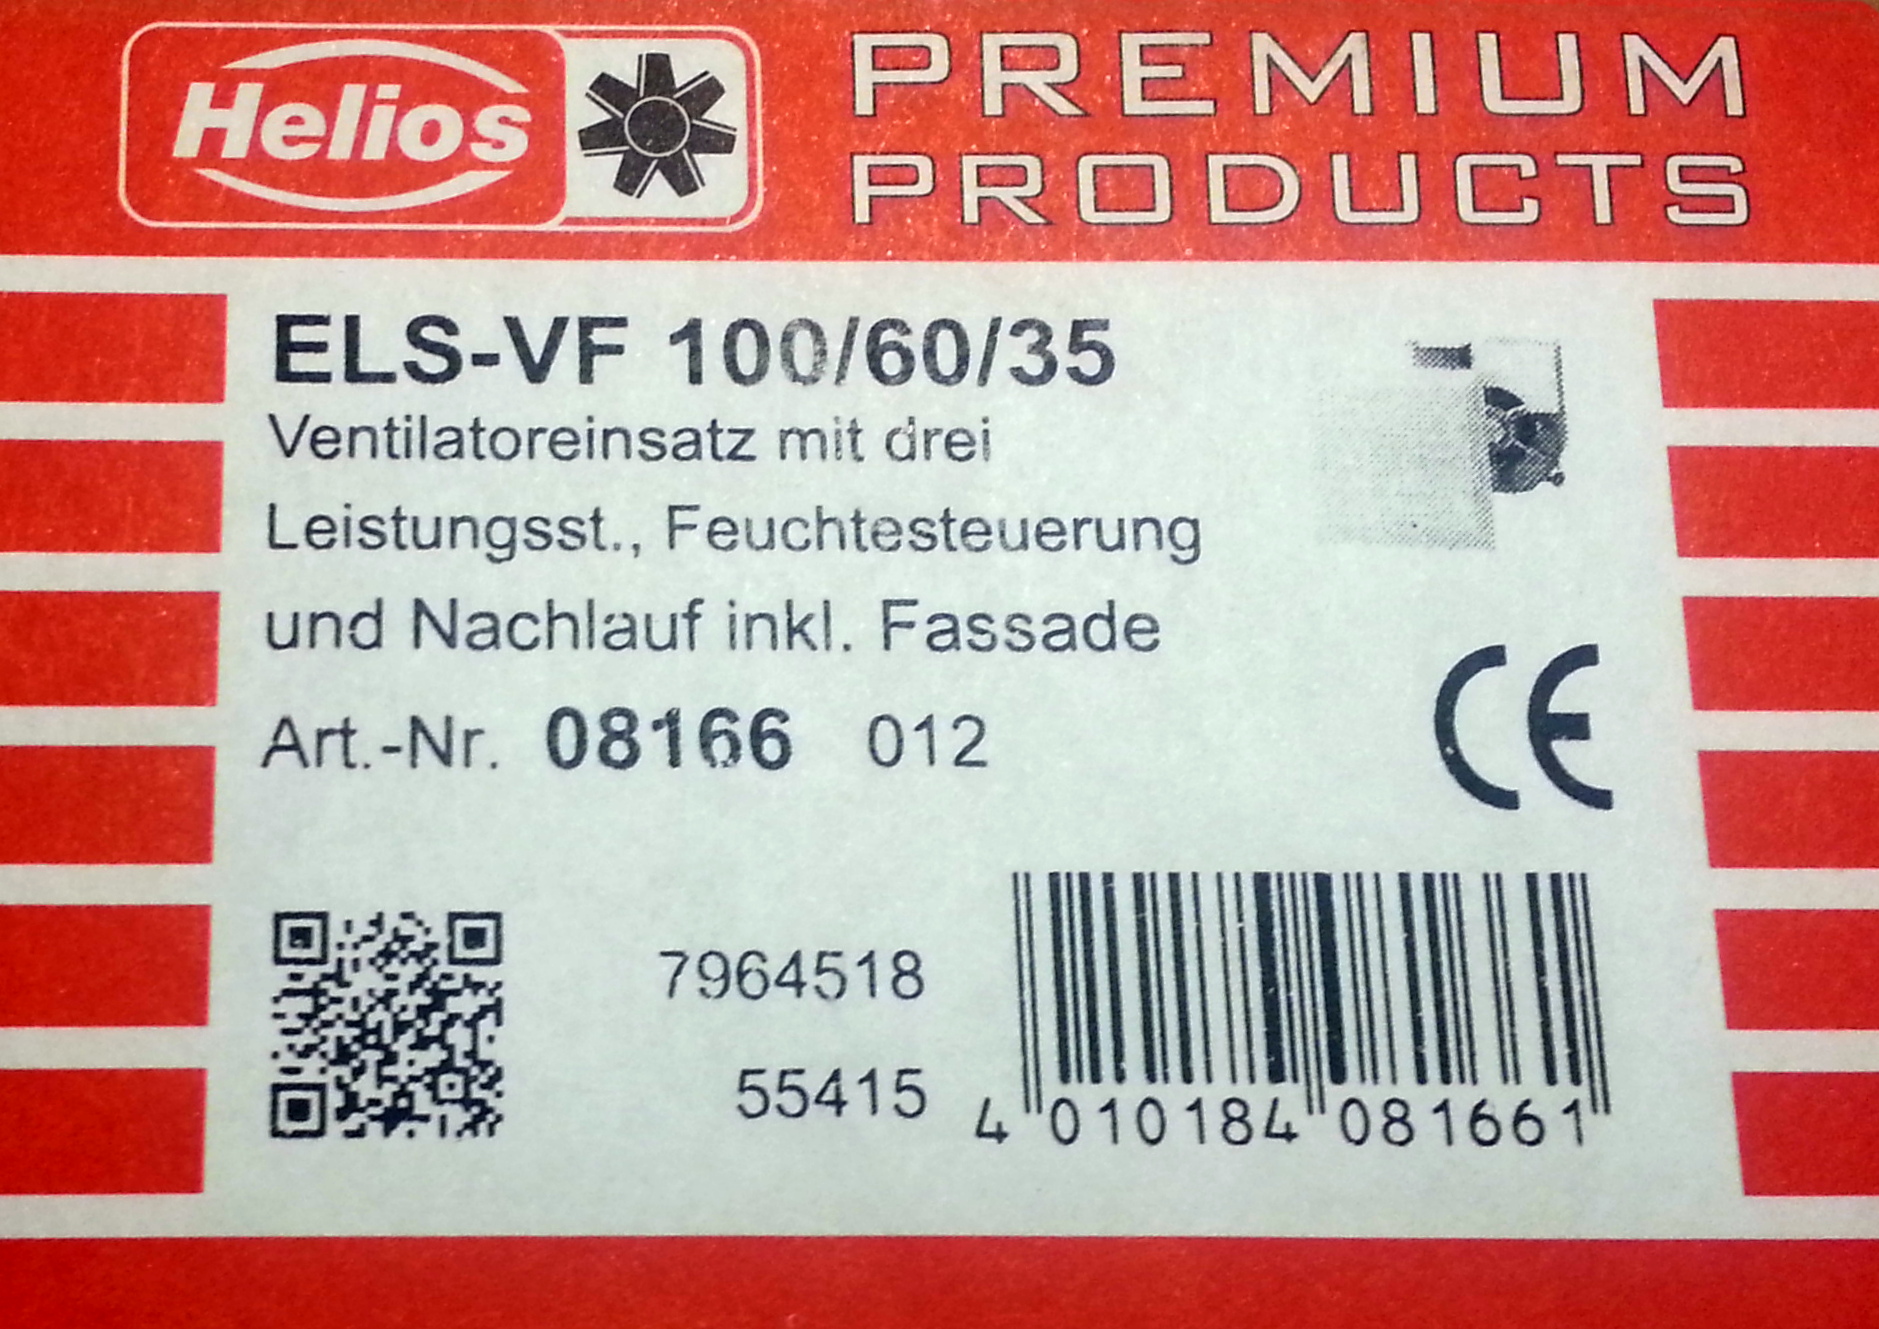 Helios ELS-VF 100/60/35 Ventilatoreinsatz mit 3 Leistungsstufen mit Feuchteverlaufsautomatik 8166